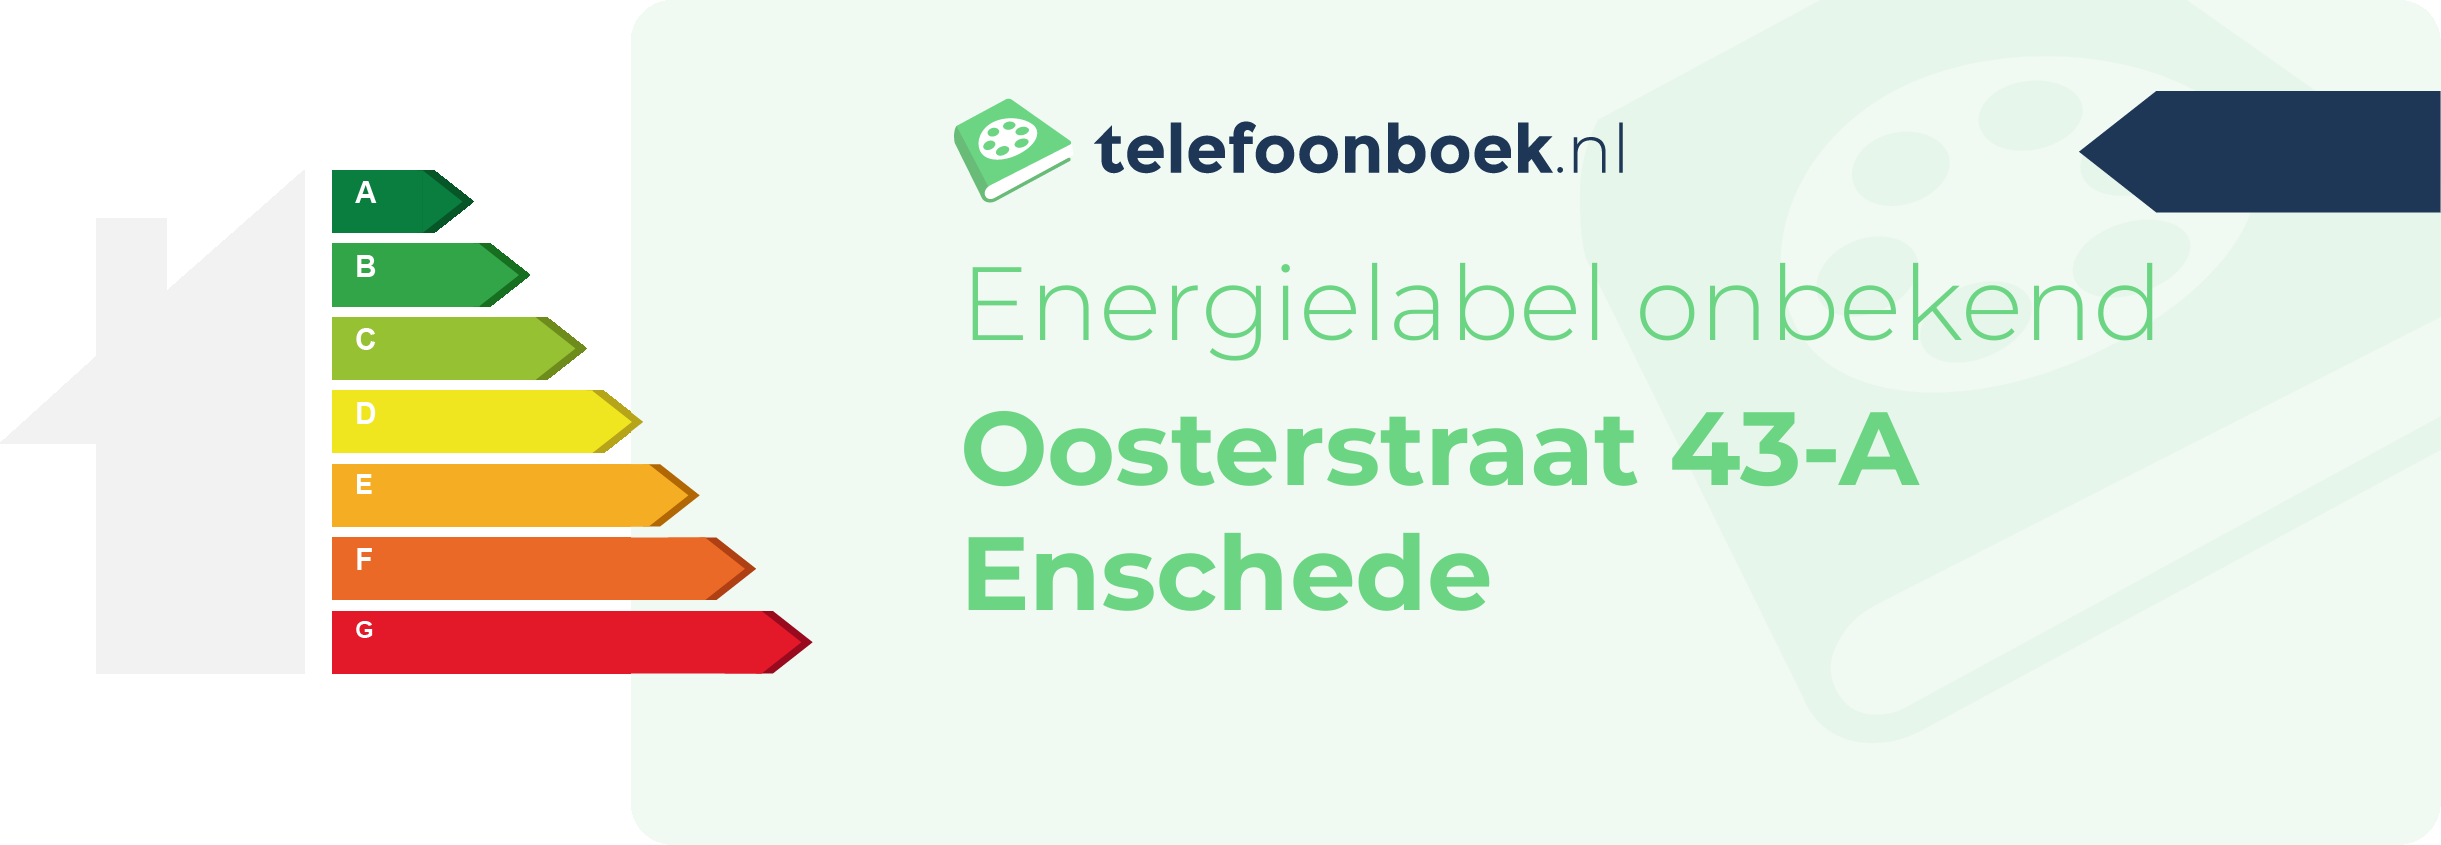 Energielabel Oosterstraat 43-A Enschede